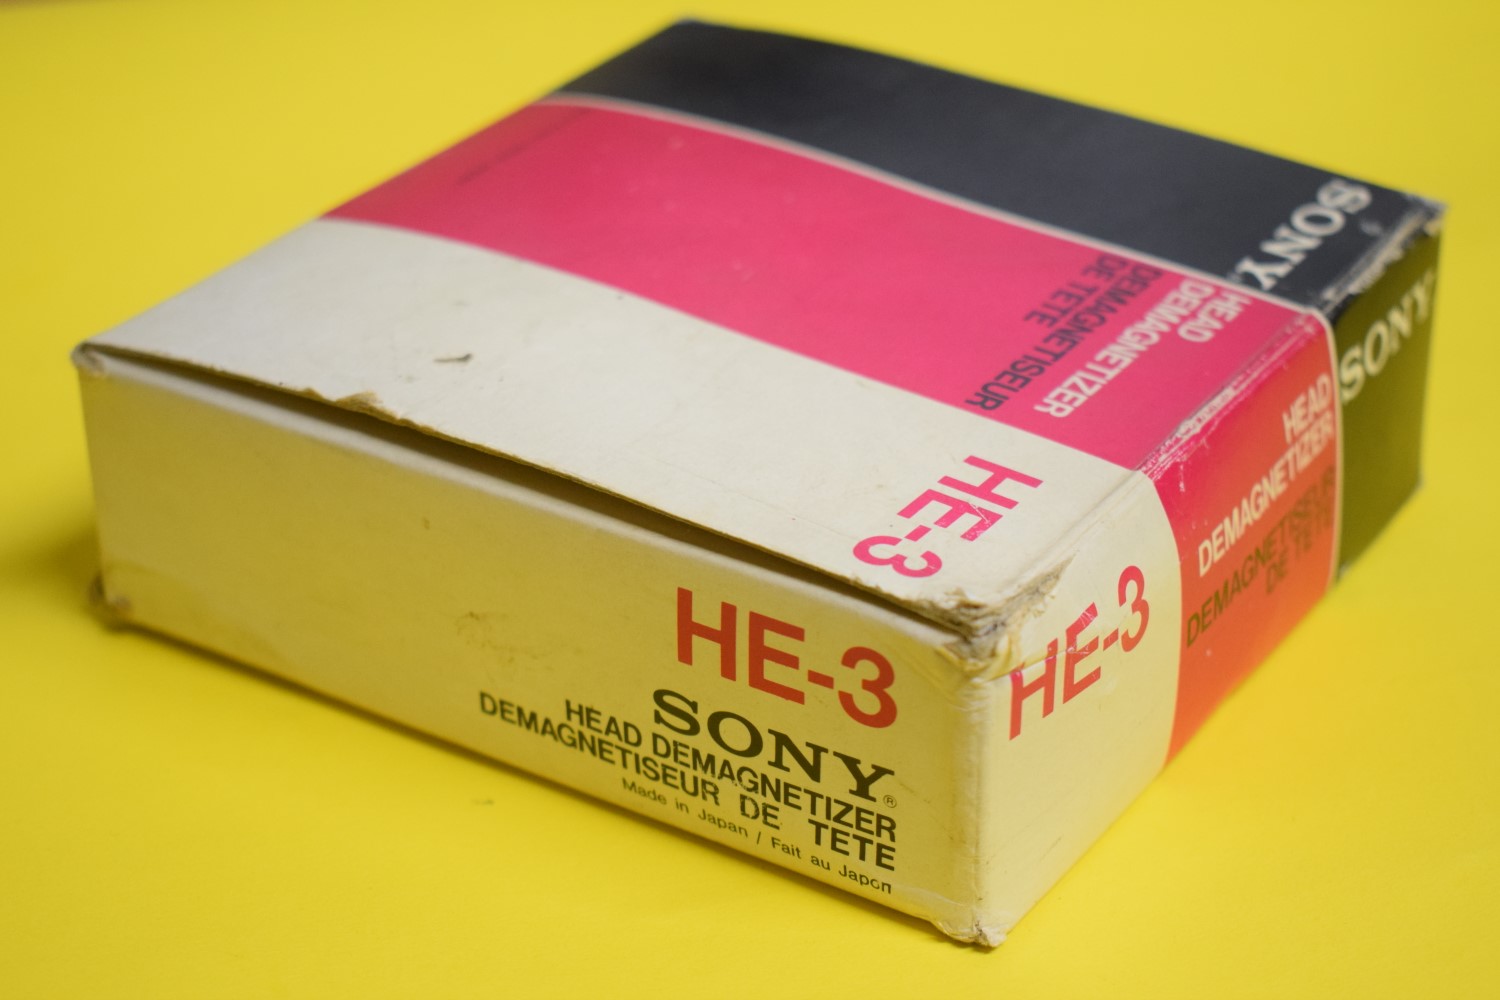 Sony HE-3 Head Demagnetizer